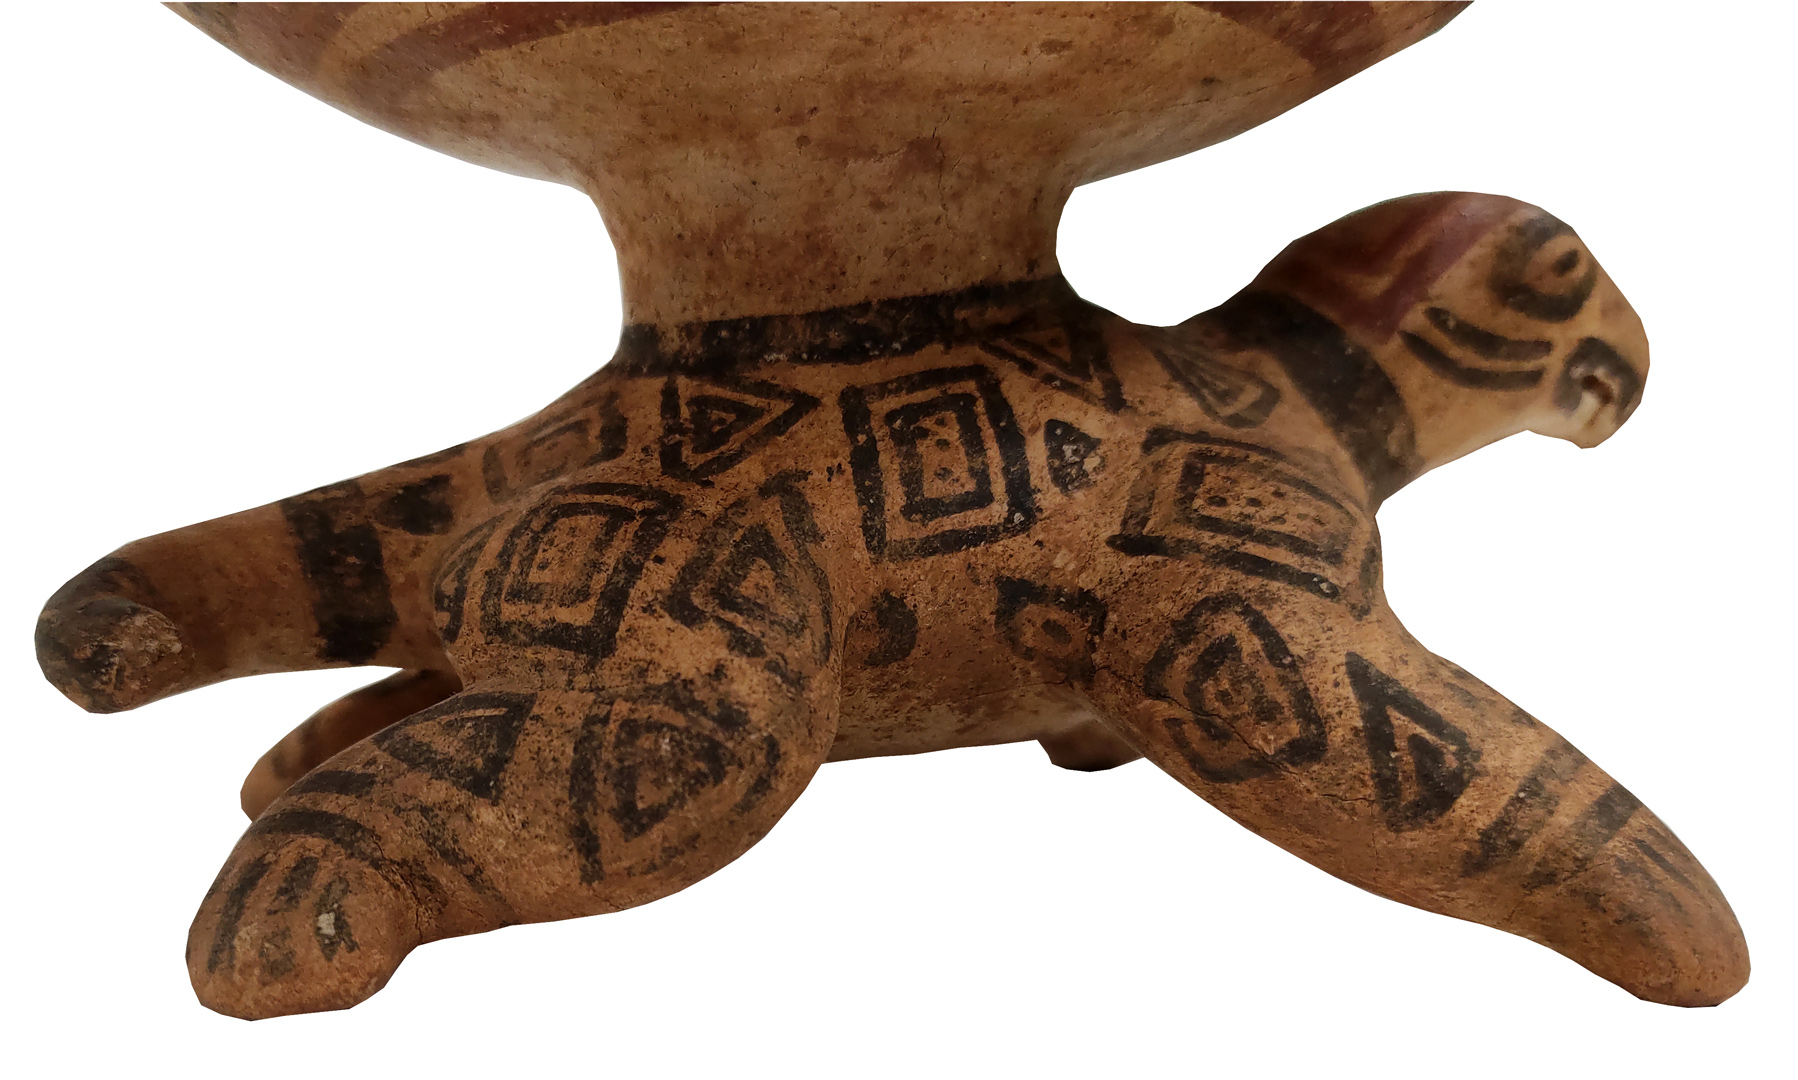 Artefacto 75. Detalle de los motivos decorativos representados en el cuerpo de la tortuga. Fotografía DAH, MNCR.